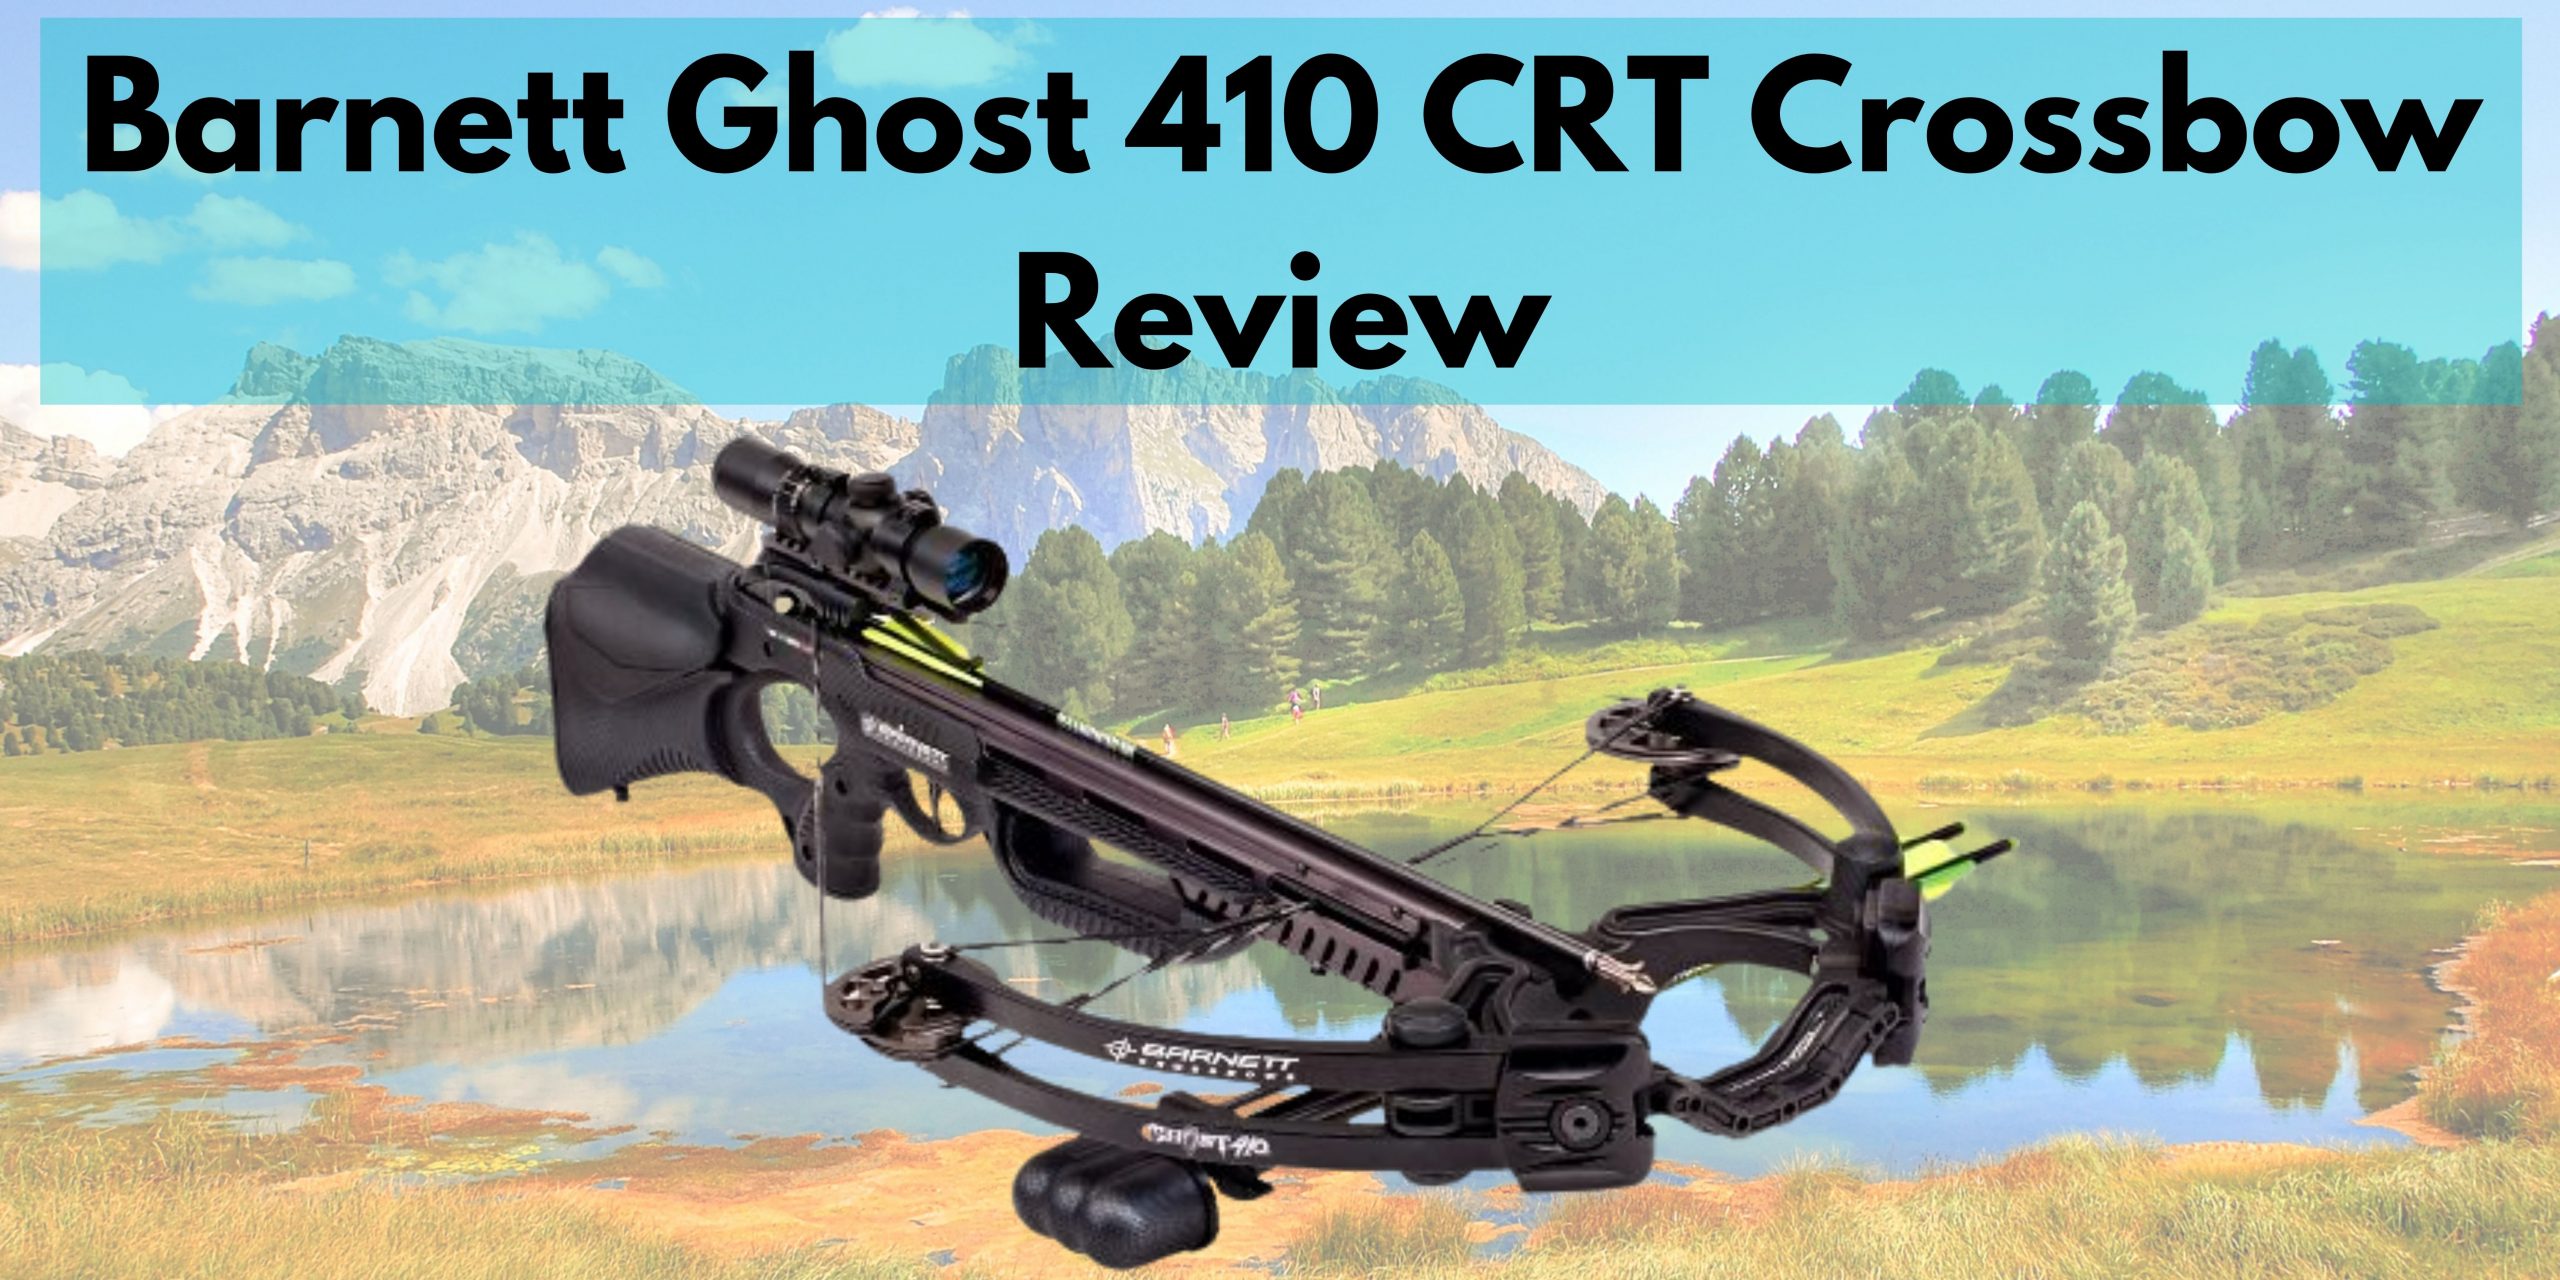 Barnett Ghost 410 CRT Crossbow